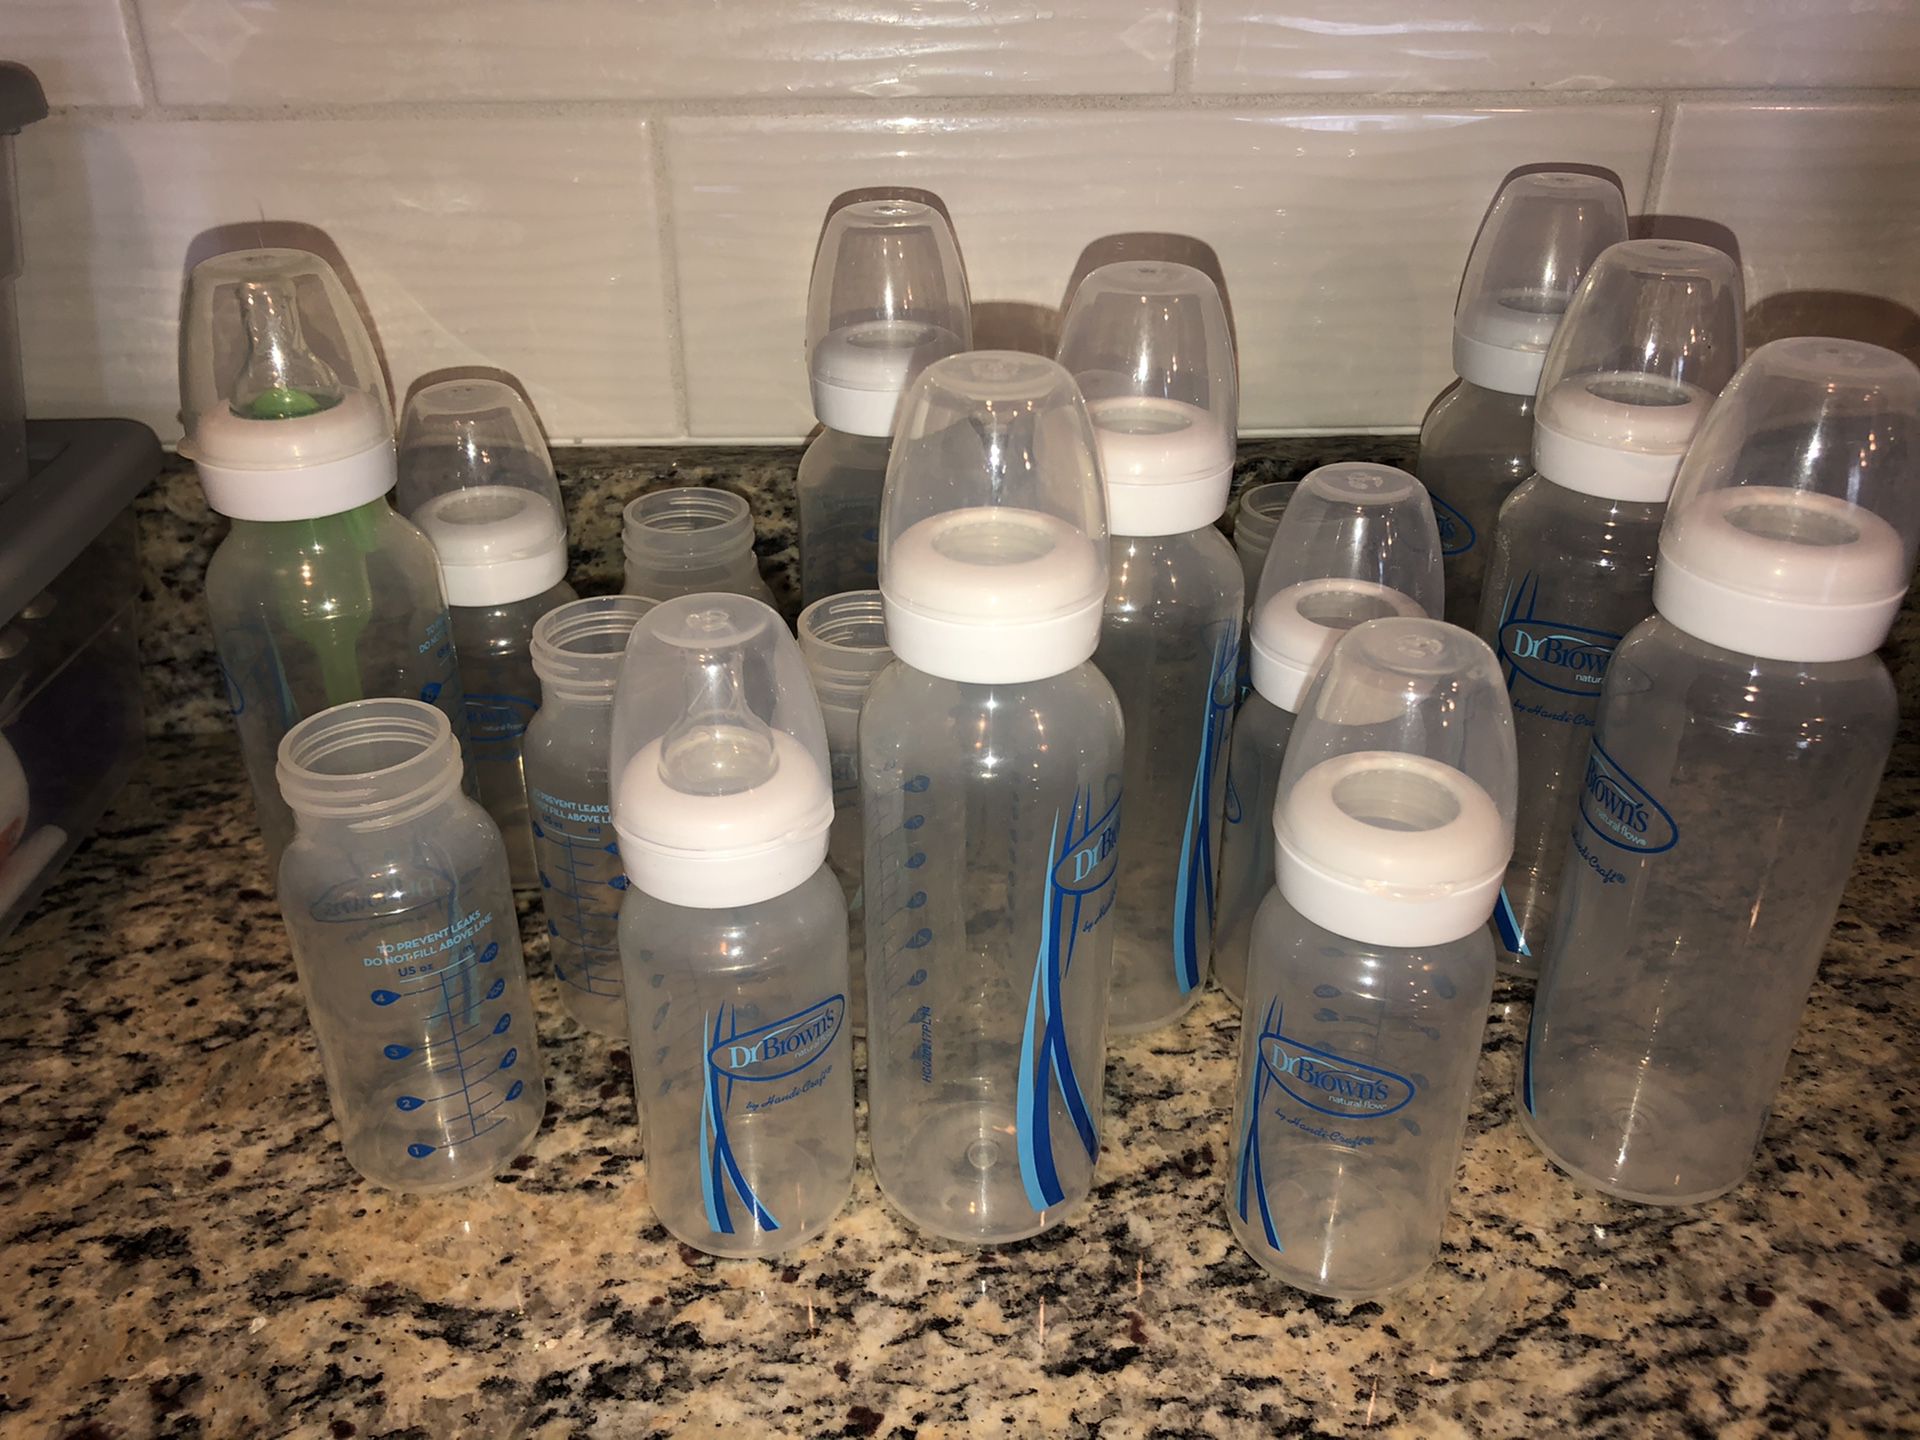 SO many baby bottles